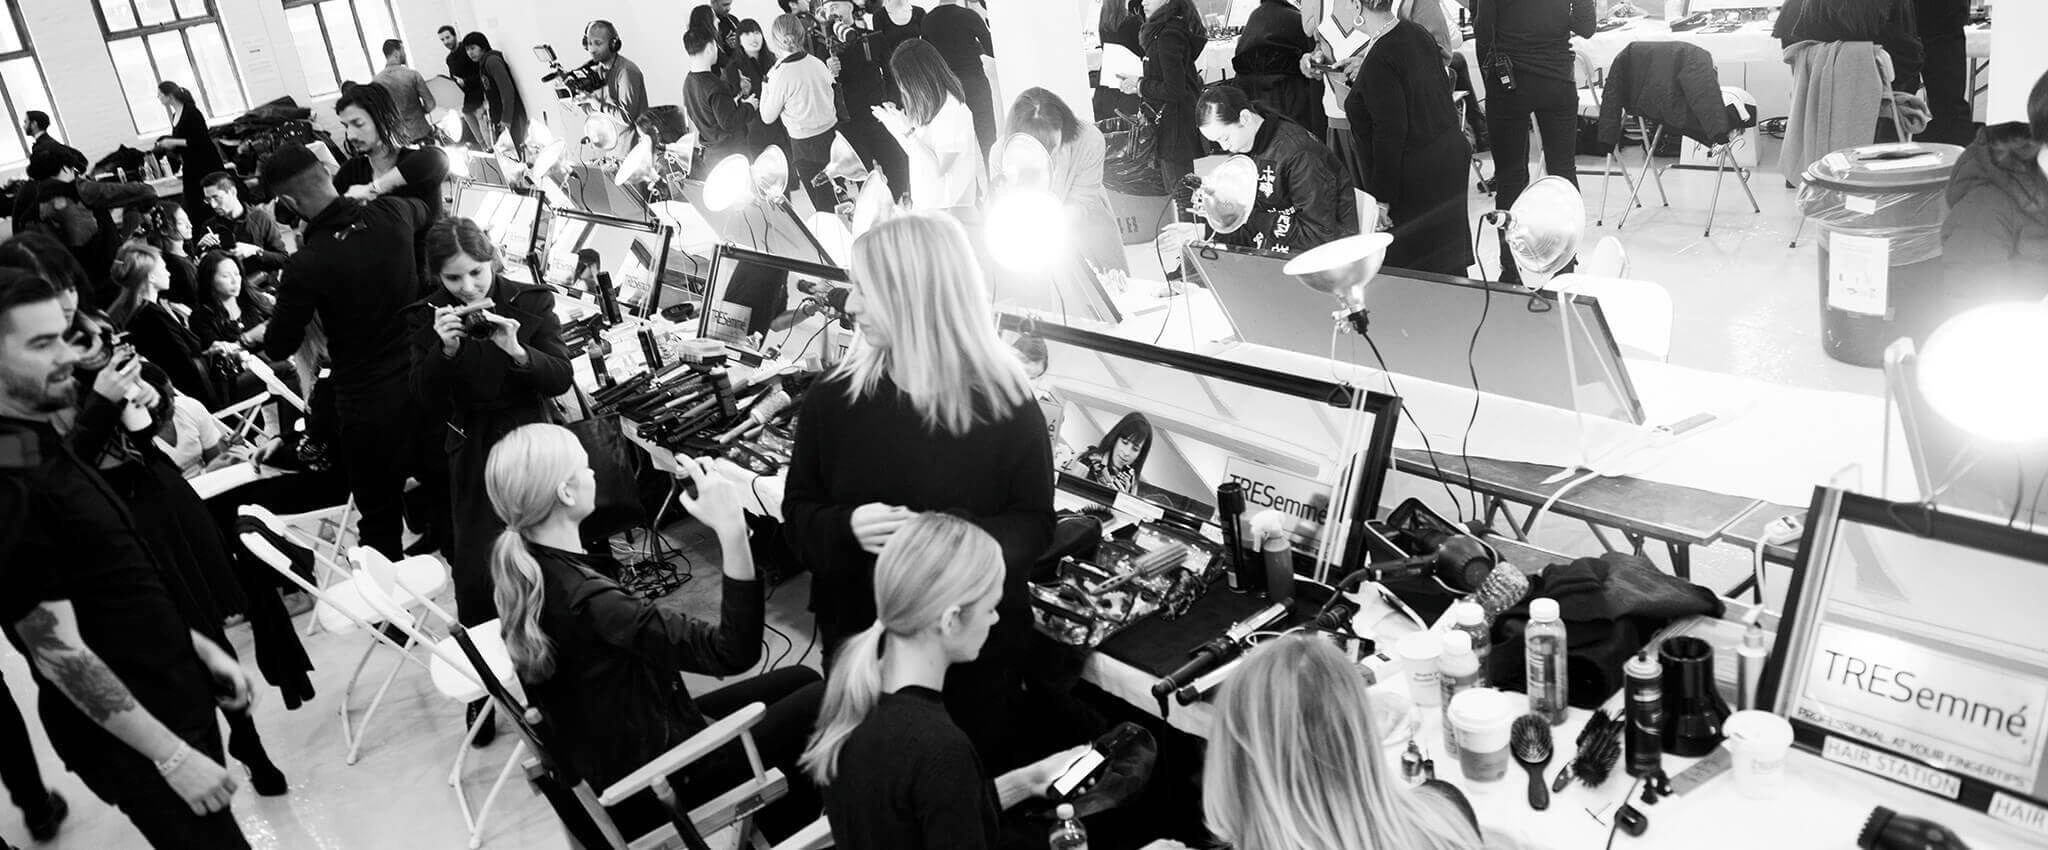 Detrás de la escena en un desfile de modas. La habitación vibra llena de modelos, estilistas, fotógrafos, herramientas de peinado y productos para el pelo.